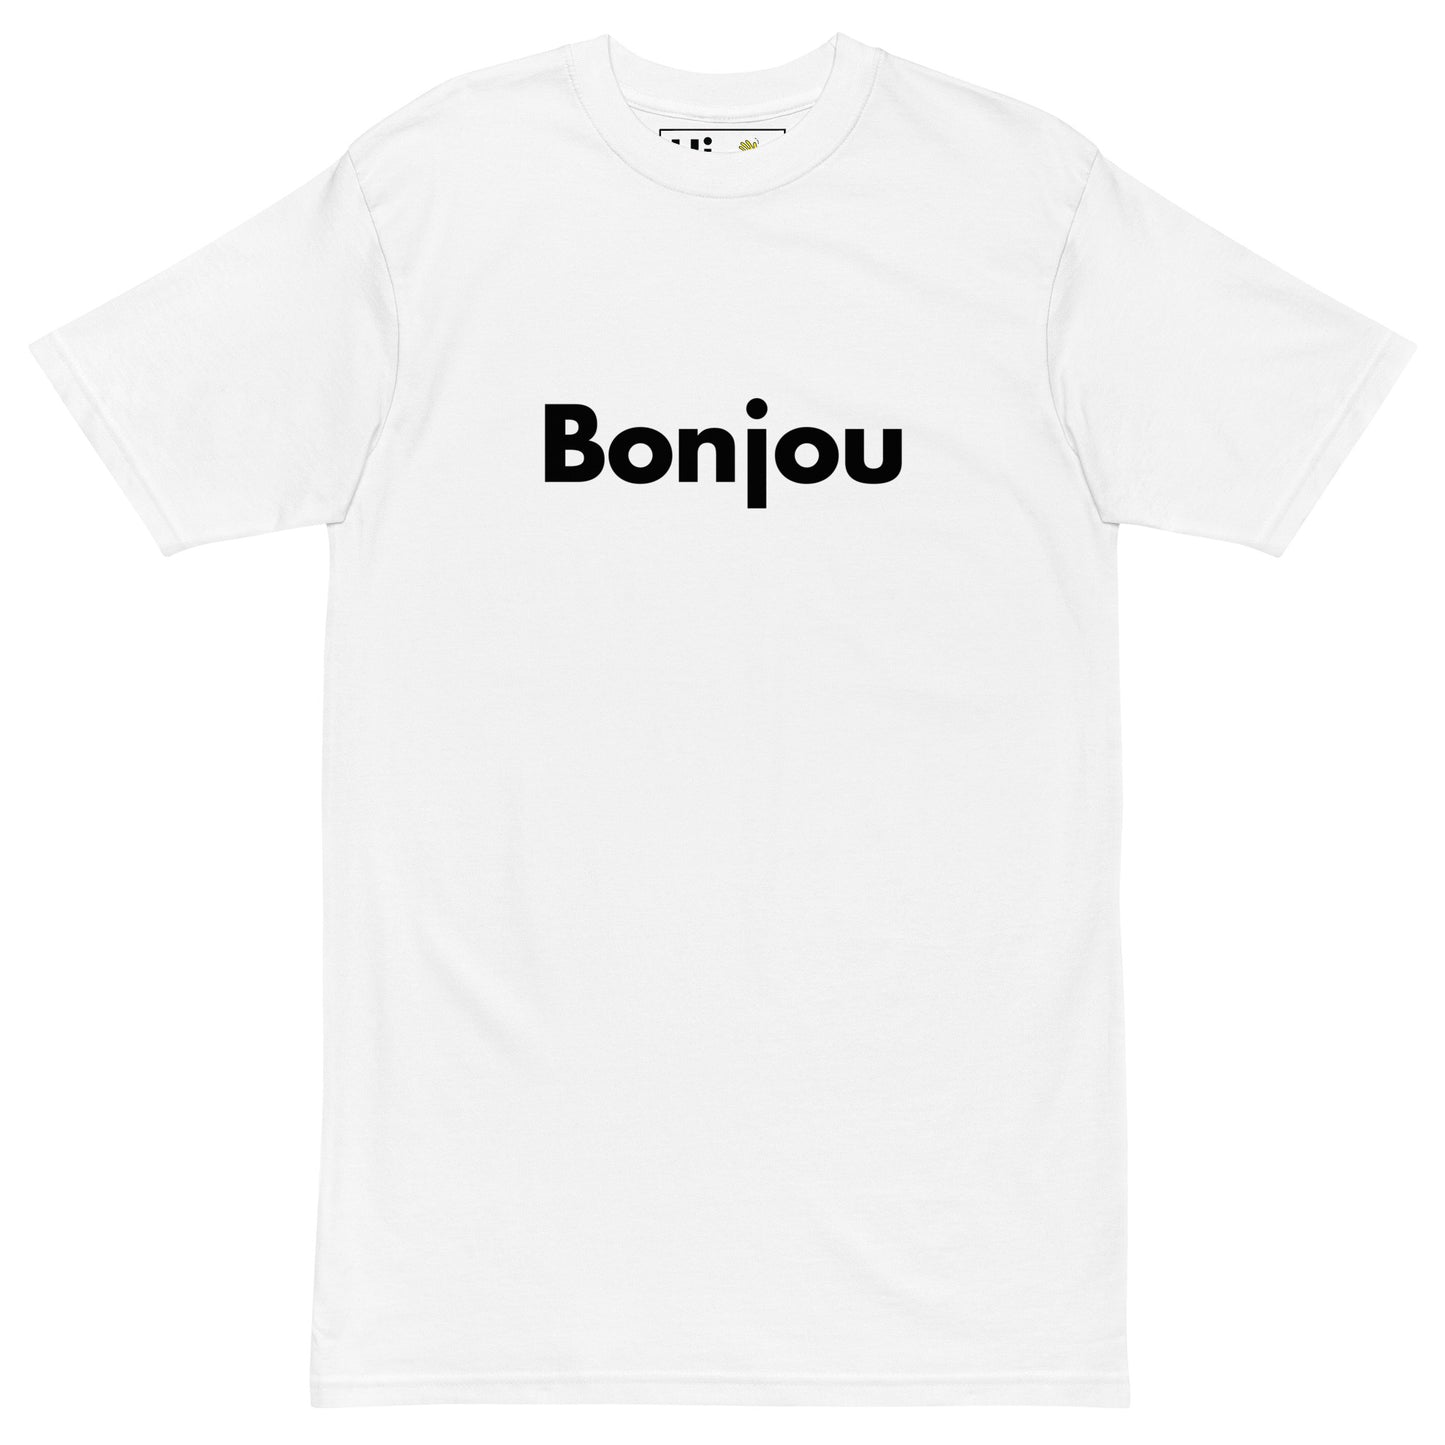 Hi Bonjou Haitian Creole